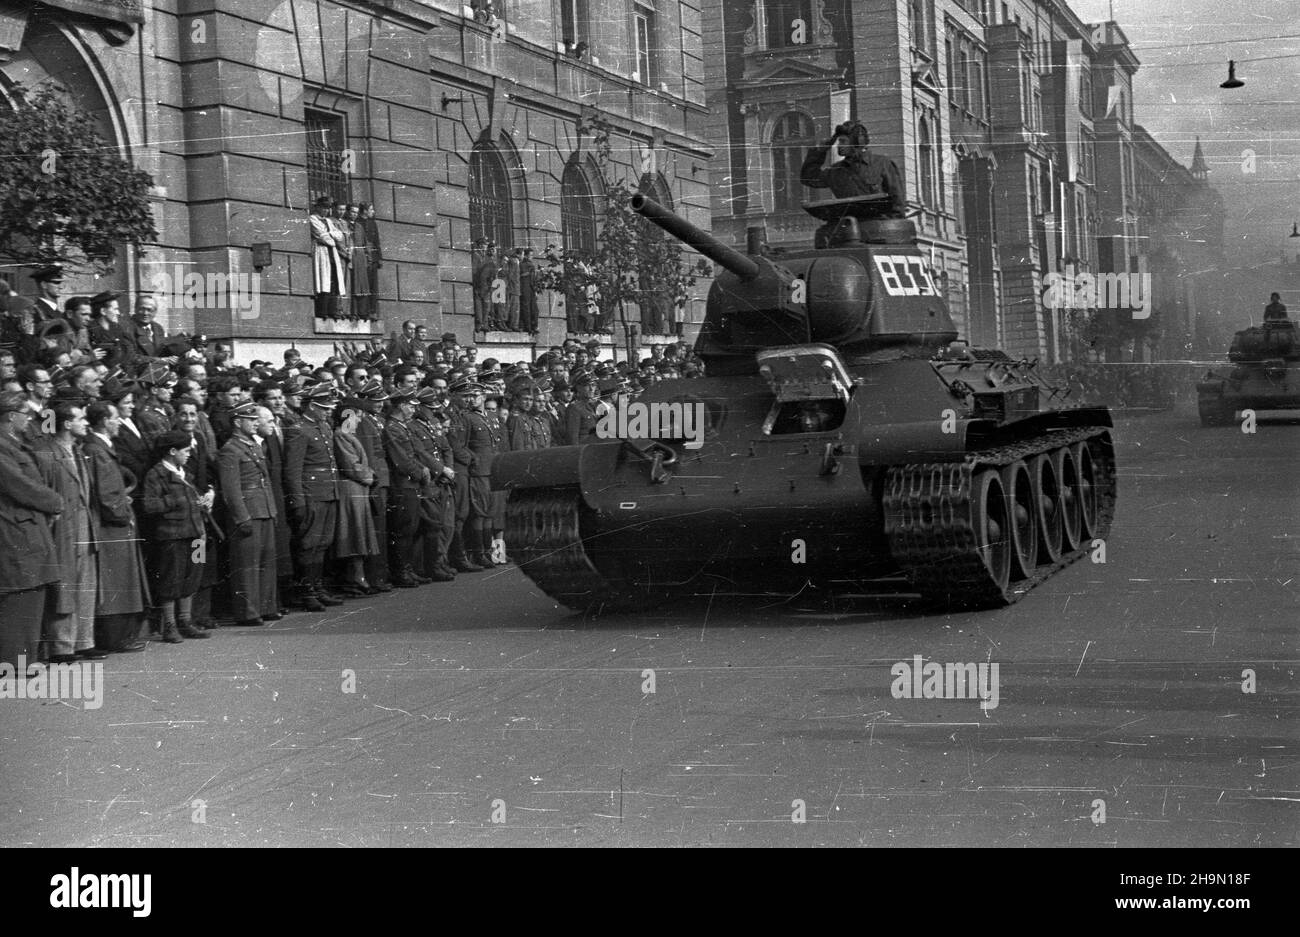 Kraków, 1948-10-10. Centralne obchody pi¹tej rocznicy bitwy pod Lenino zakoñczy³a defilada z udzia³em 70 tys. uczestników. Nz. ul. Basztowa, przejazd czo³gów zamyka defiladê. mw  PAP      Cracow, Oct. 10, 1948. Central ceremonies marking the fifth anniversary of the Battle of Lenino ended with a parade attended by 70,000 people. Pictured: Basztowa Street,  tanks closing the parade.  mw  PAP Stock Photo